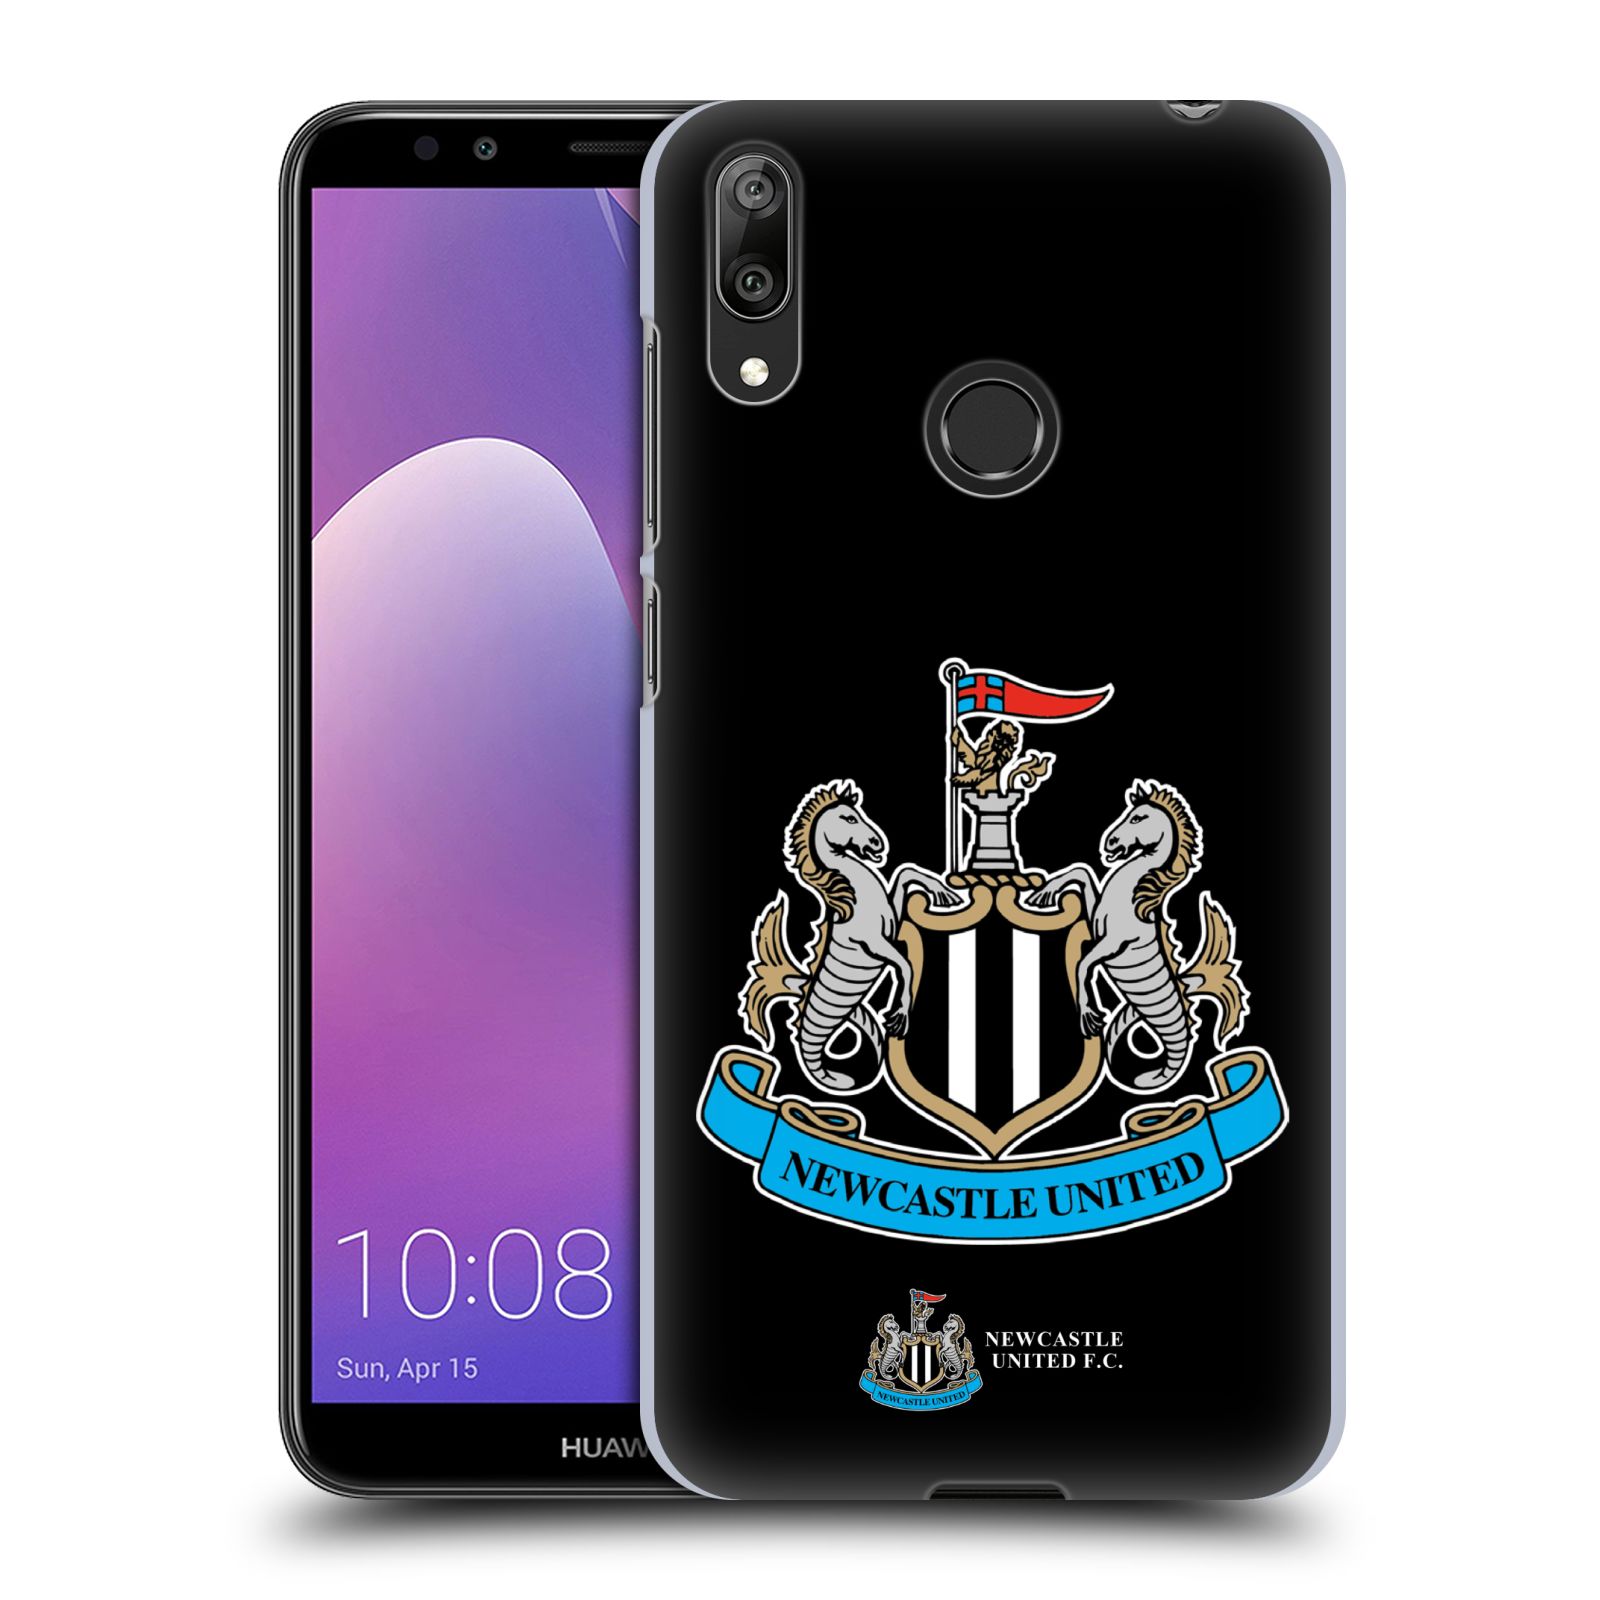 Pouzdro na mobil Huawei Y7 2019 - Head Case - Fotbalový klub Newcastle United FC černá velký barevný znak